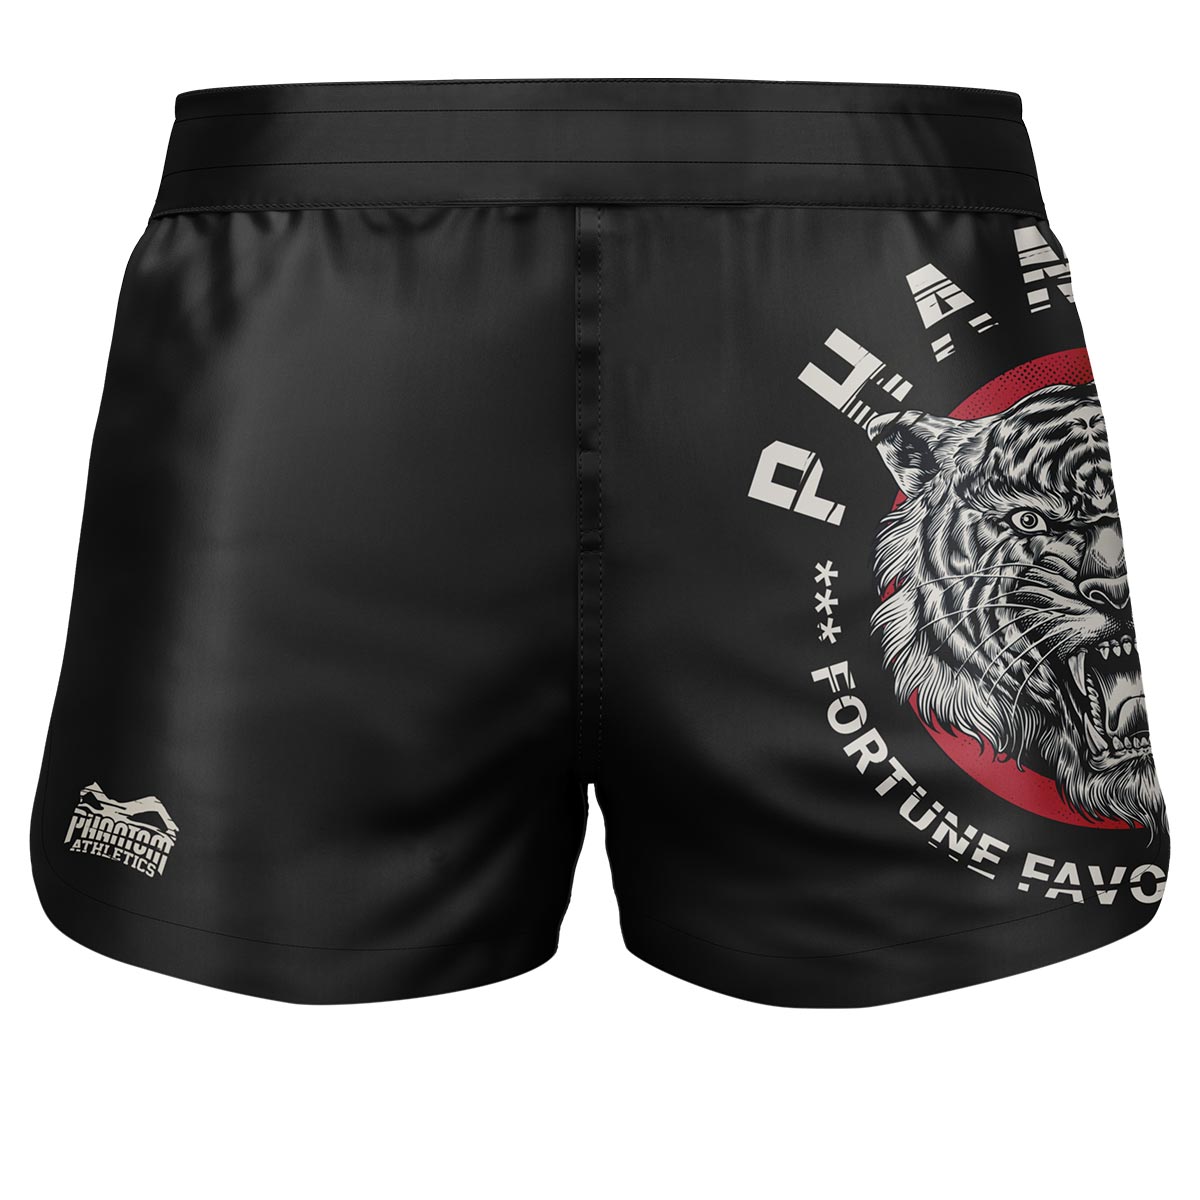 Phantom Fightshorts Fusion 2u1. Ultimativne kratke hlače za vaše borilačke vještine. Idealan za MMA, Muay Thai, BJJ, hrvanje i još mnogo toga. U crnoj boji s našim popularnim Tiger Unit dizajnom.